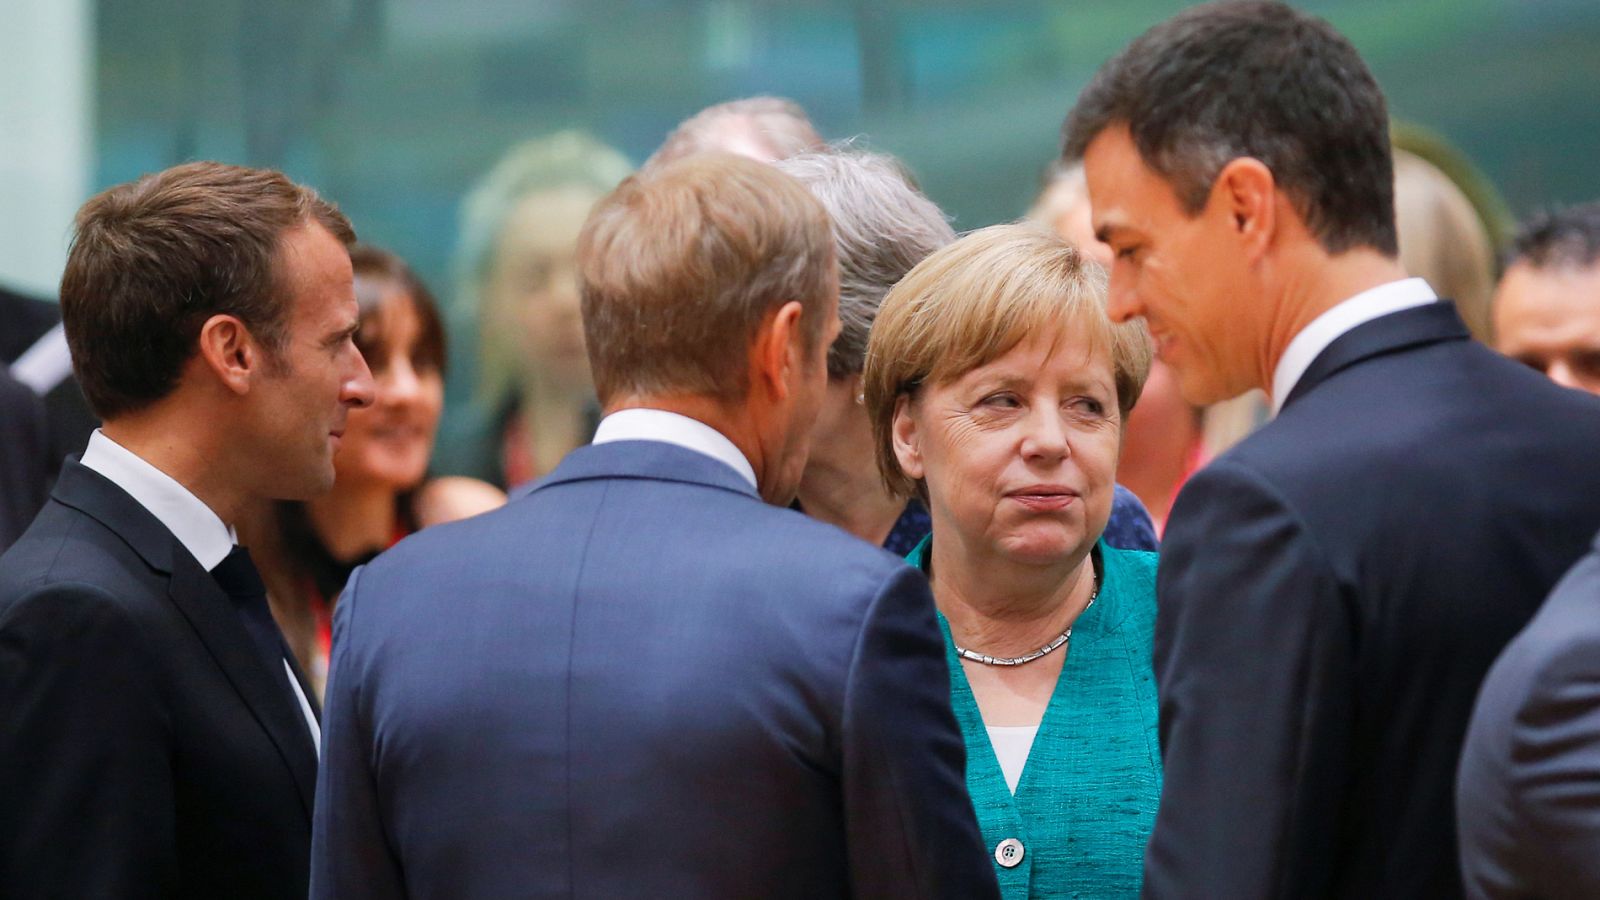 El presidente del Gobierno español, Pedro Sánchez, conversa con el presidente del Consejo Europeo, Donald Tusk, el presidente francés Emmanuel Macron, la canciller alemana Angela Merkel (Archivo)